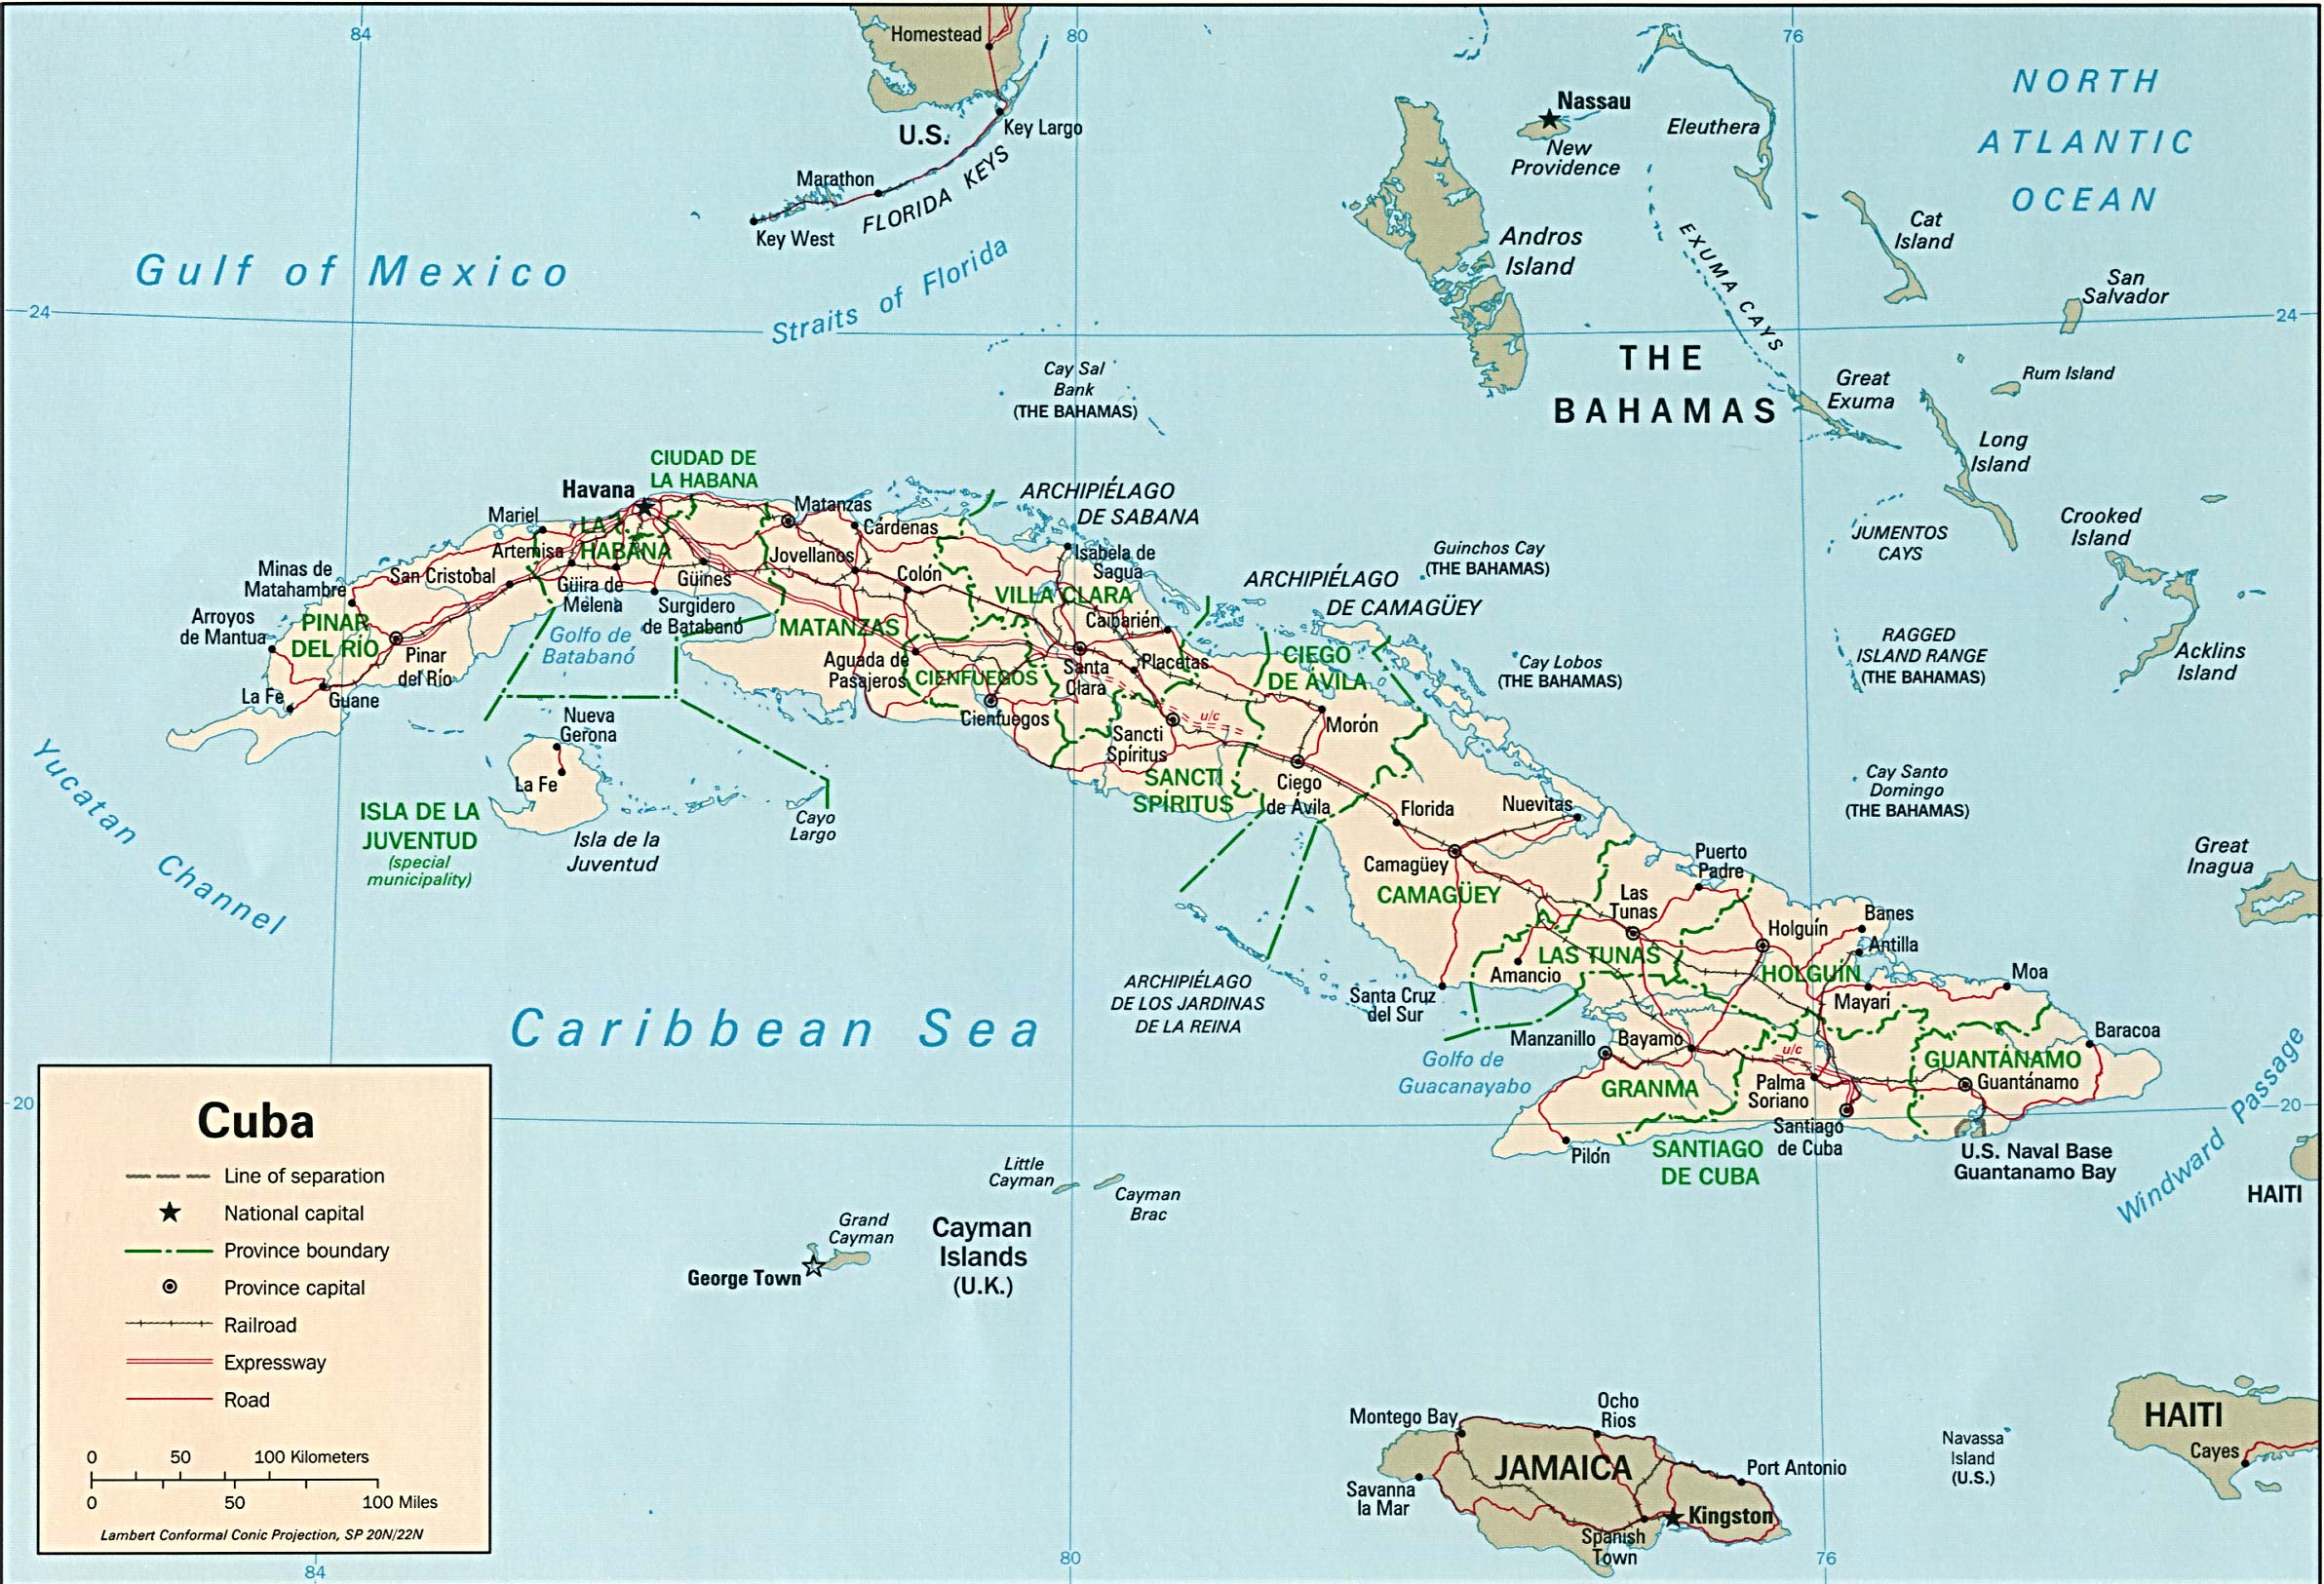 Mapa Político de Cuba